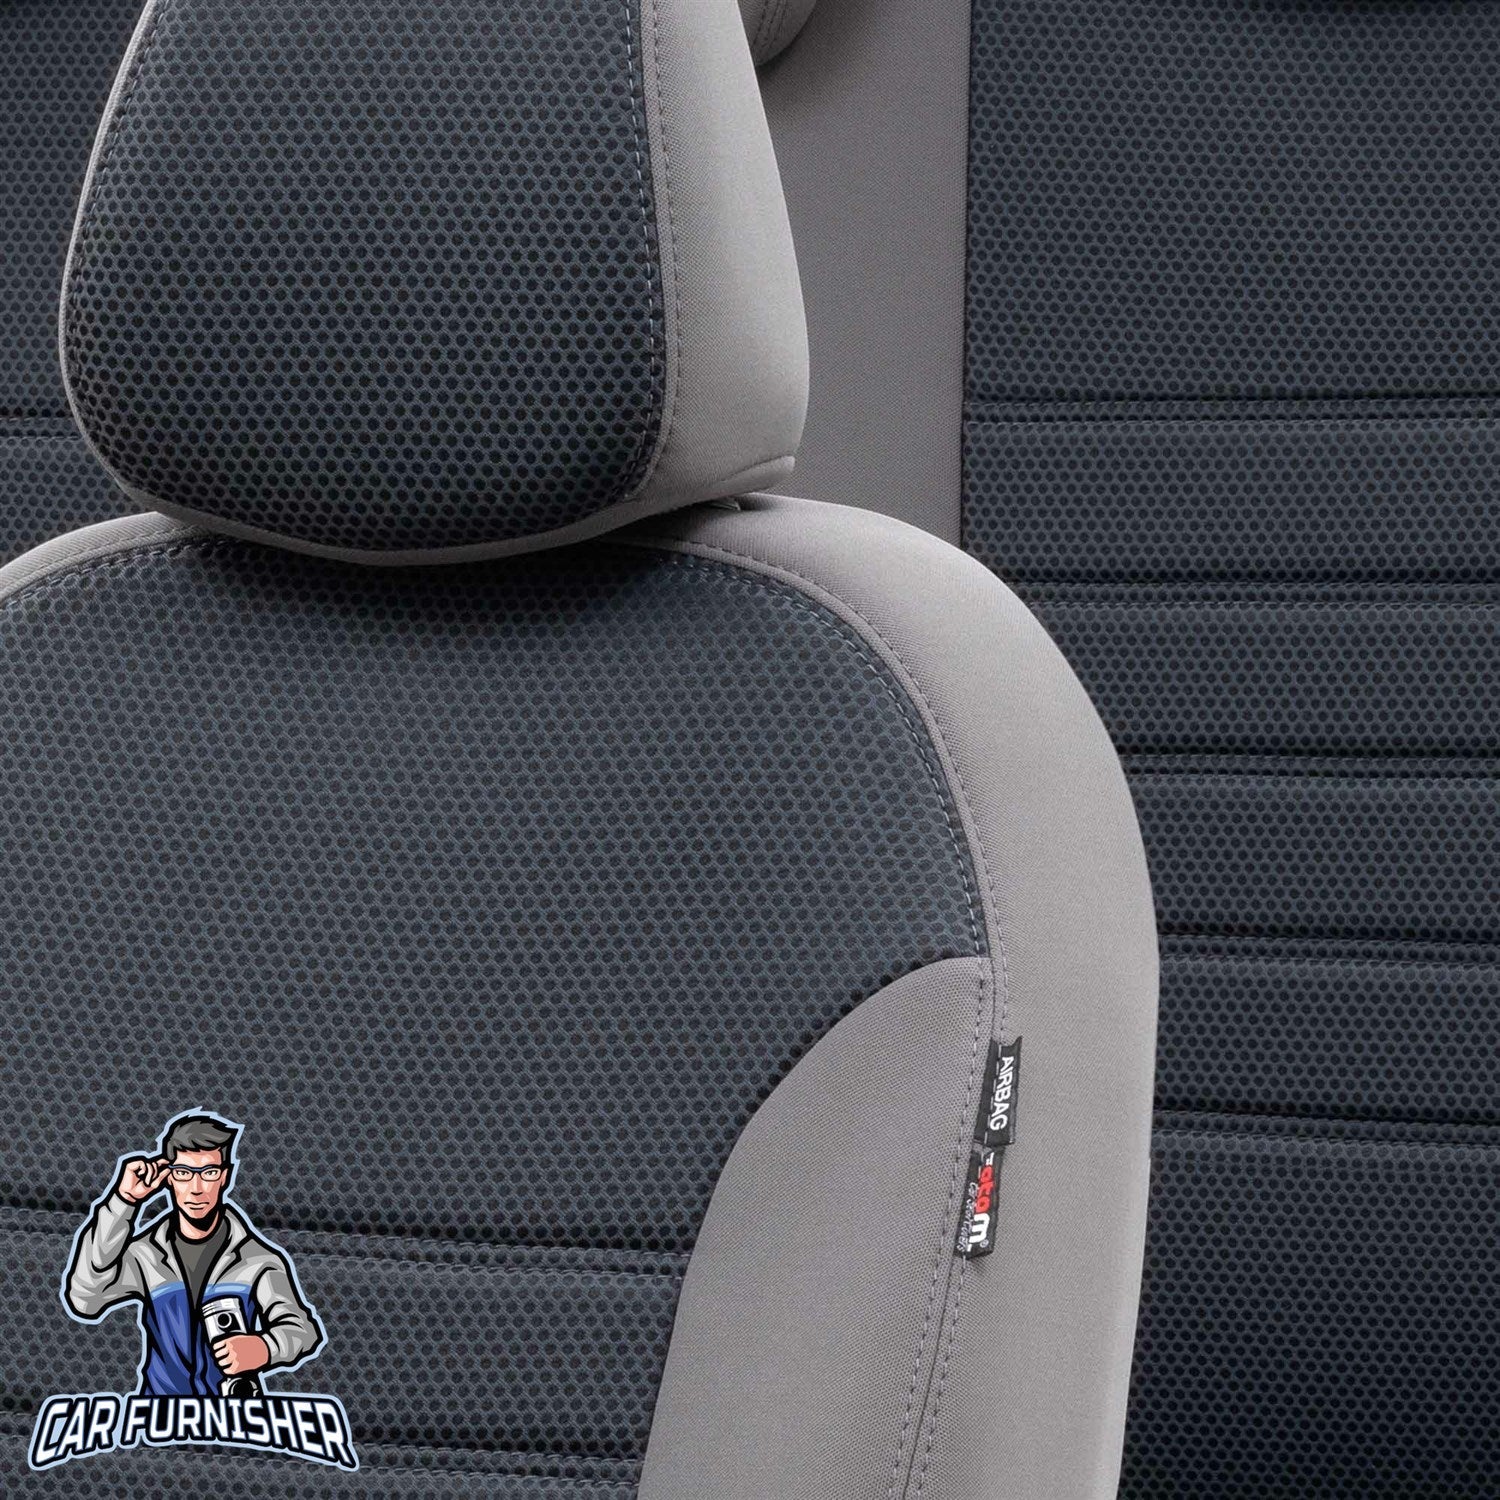 Volvo S90 Seat Cover Original Jacquard Design Smoked Jacquard Fabric